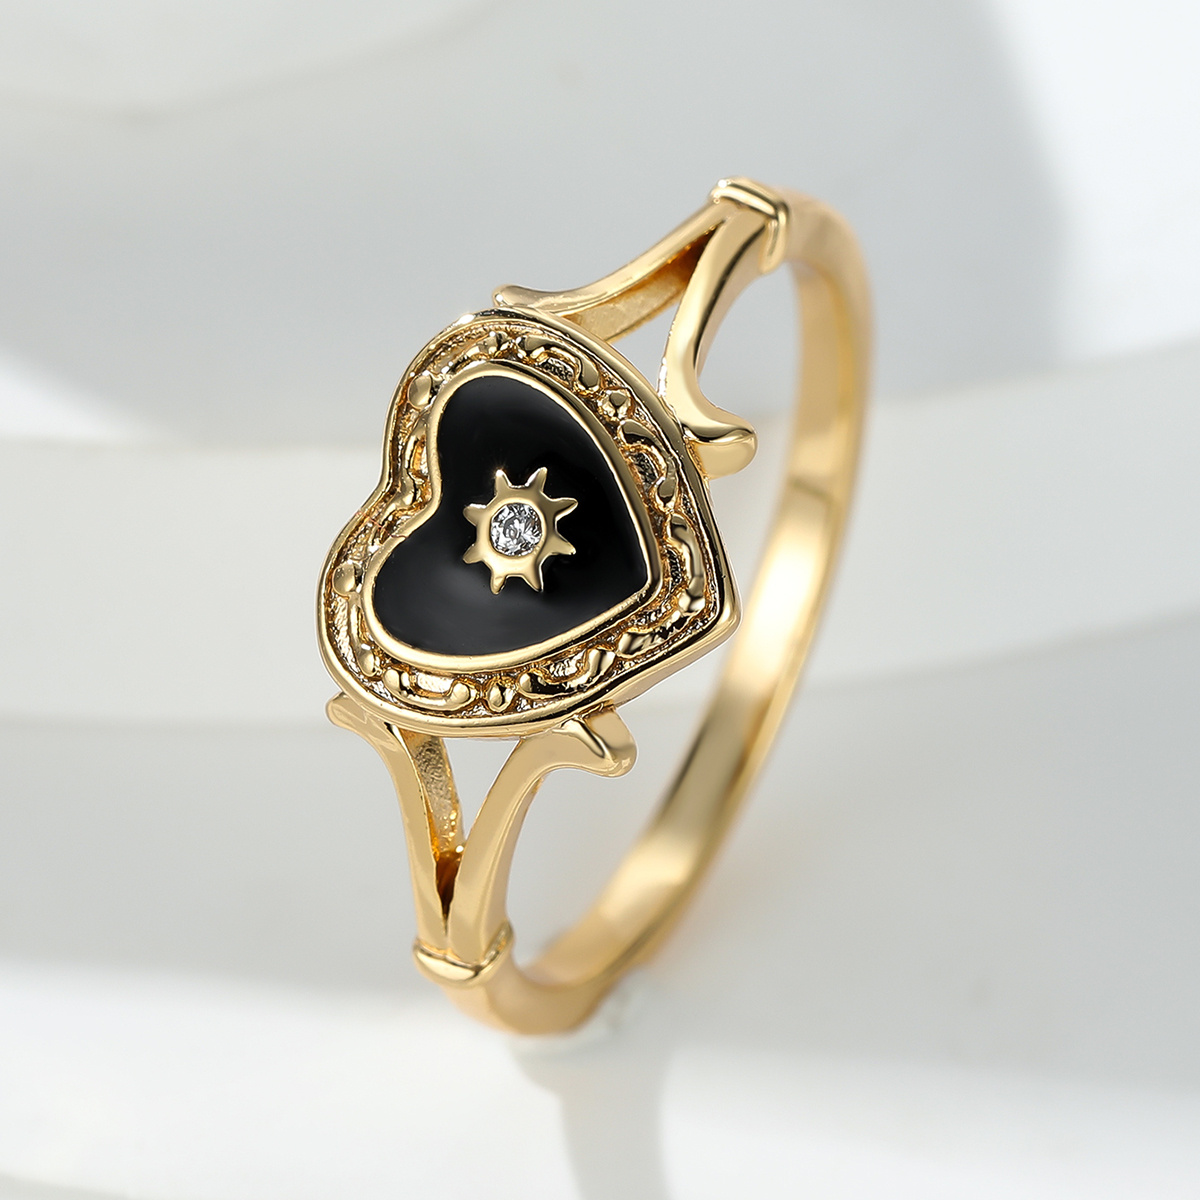 

Bohemian Heart Golden Color Ring For Women Love Heart Black Enamel Ring Female Finger Statement Jewelry Valentine's Day Gift